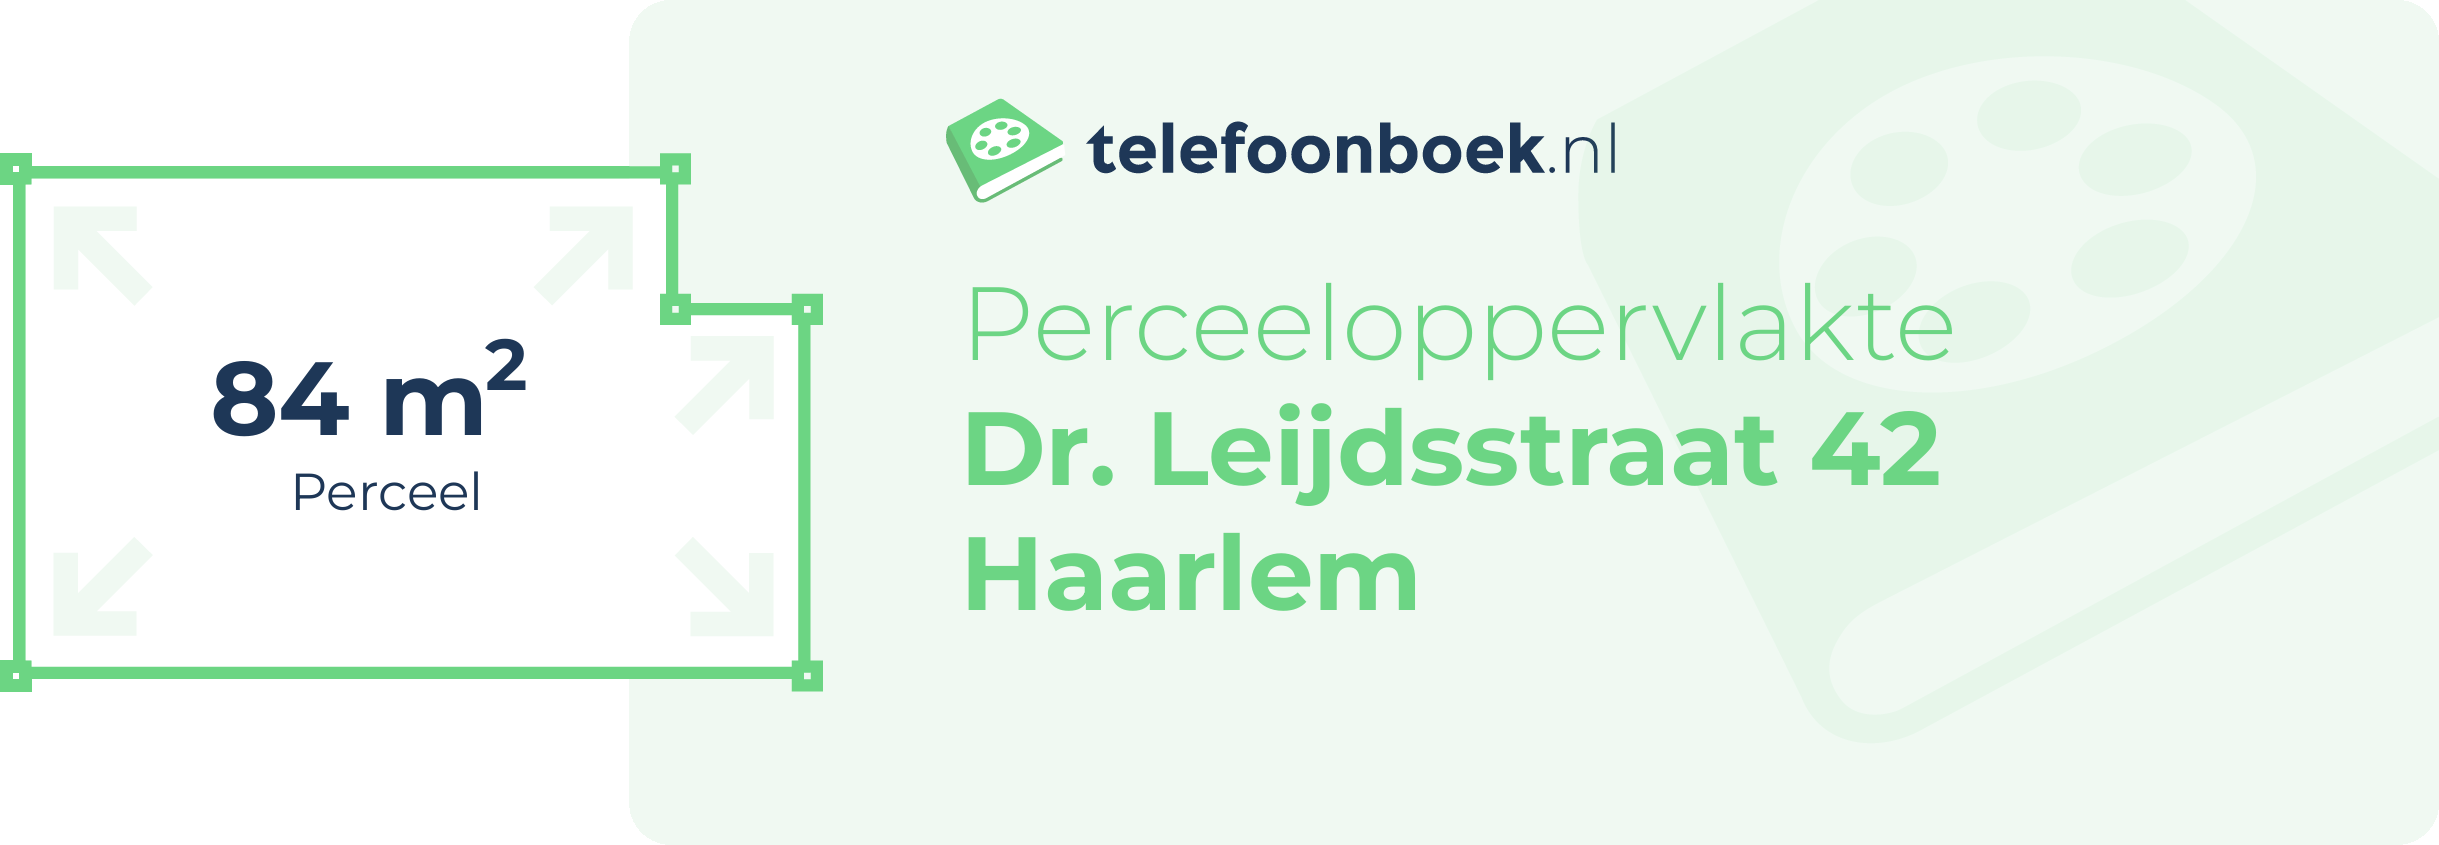 Perceeloppervlakte Dr. Leijdsstraat 42 Haarlem